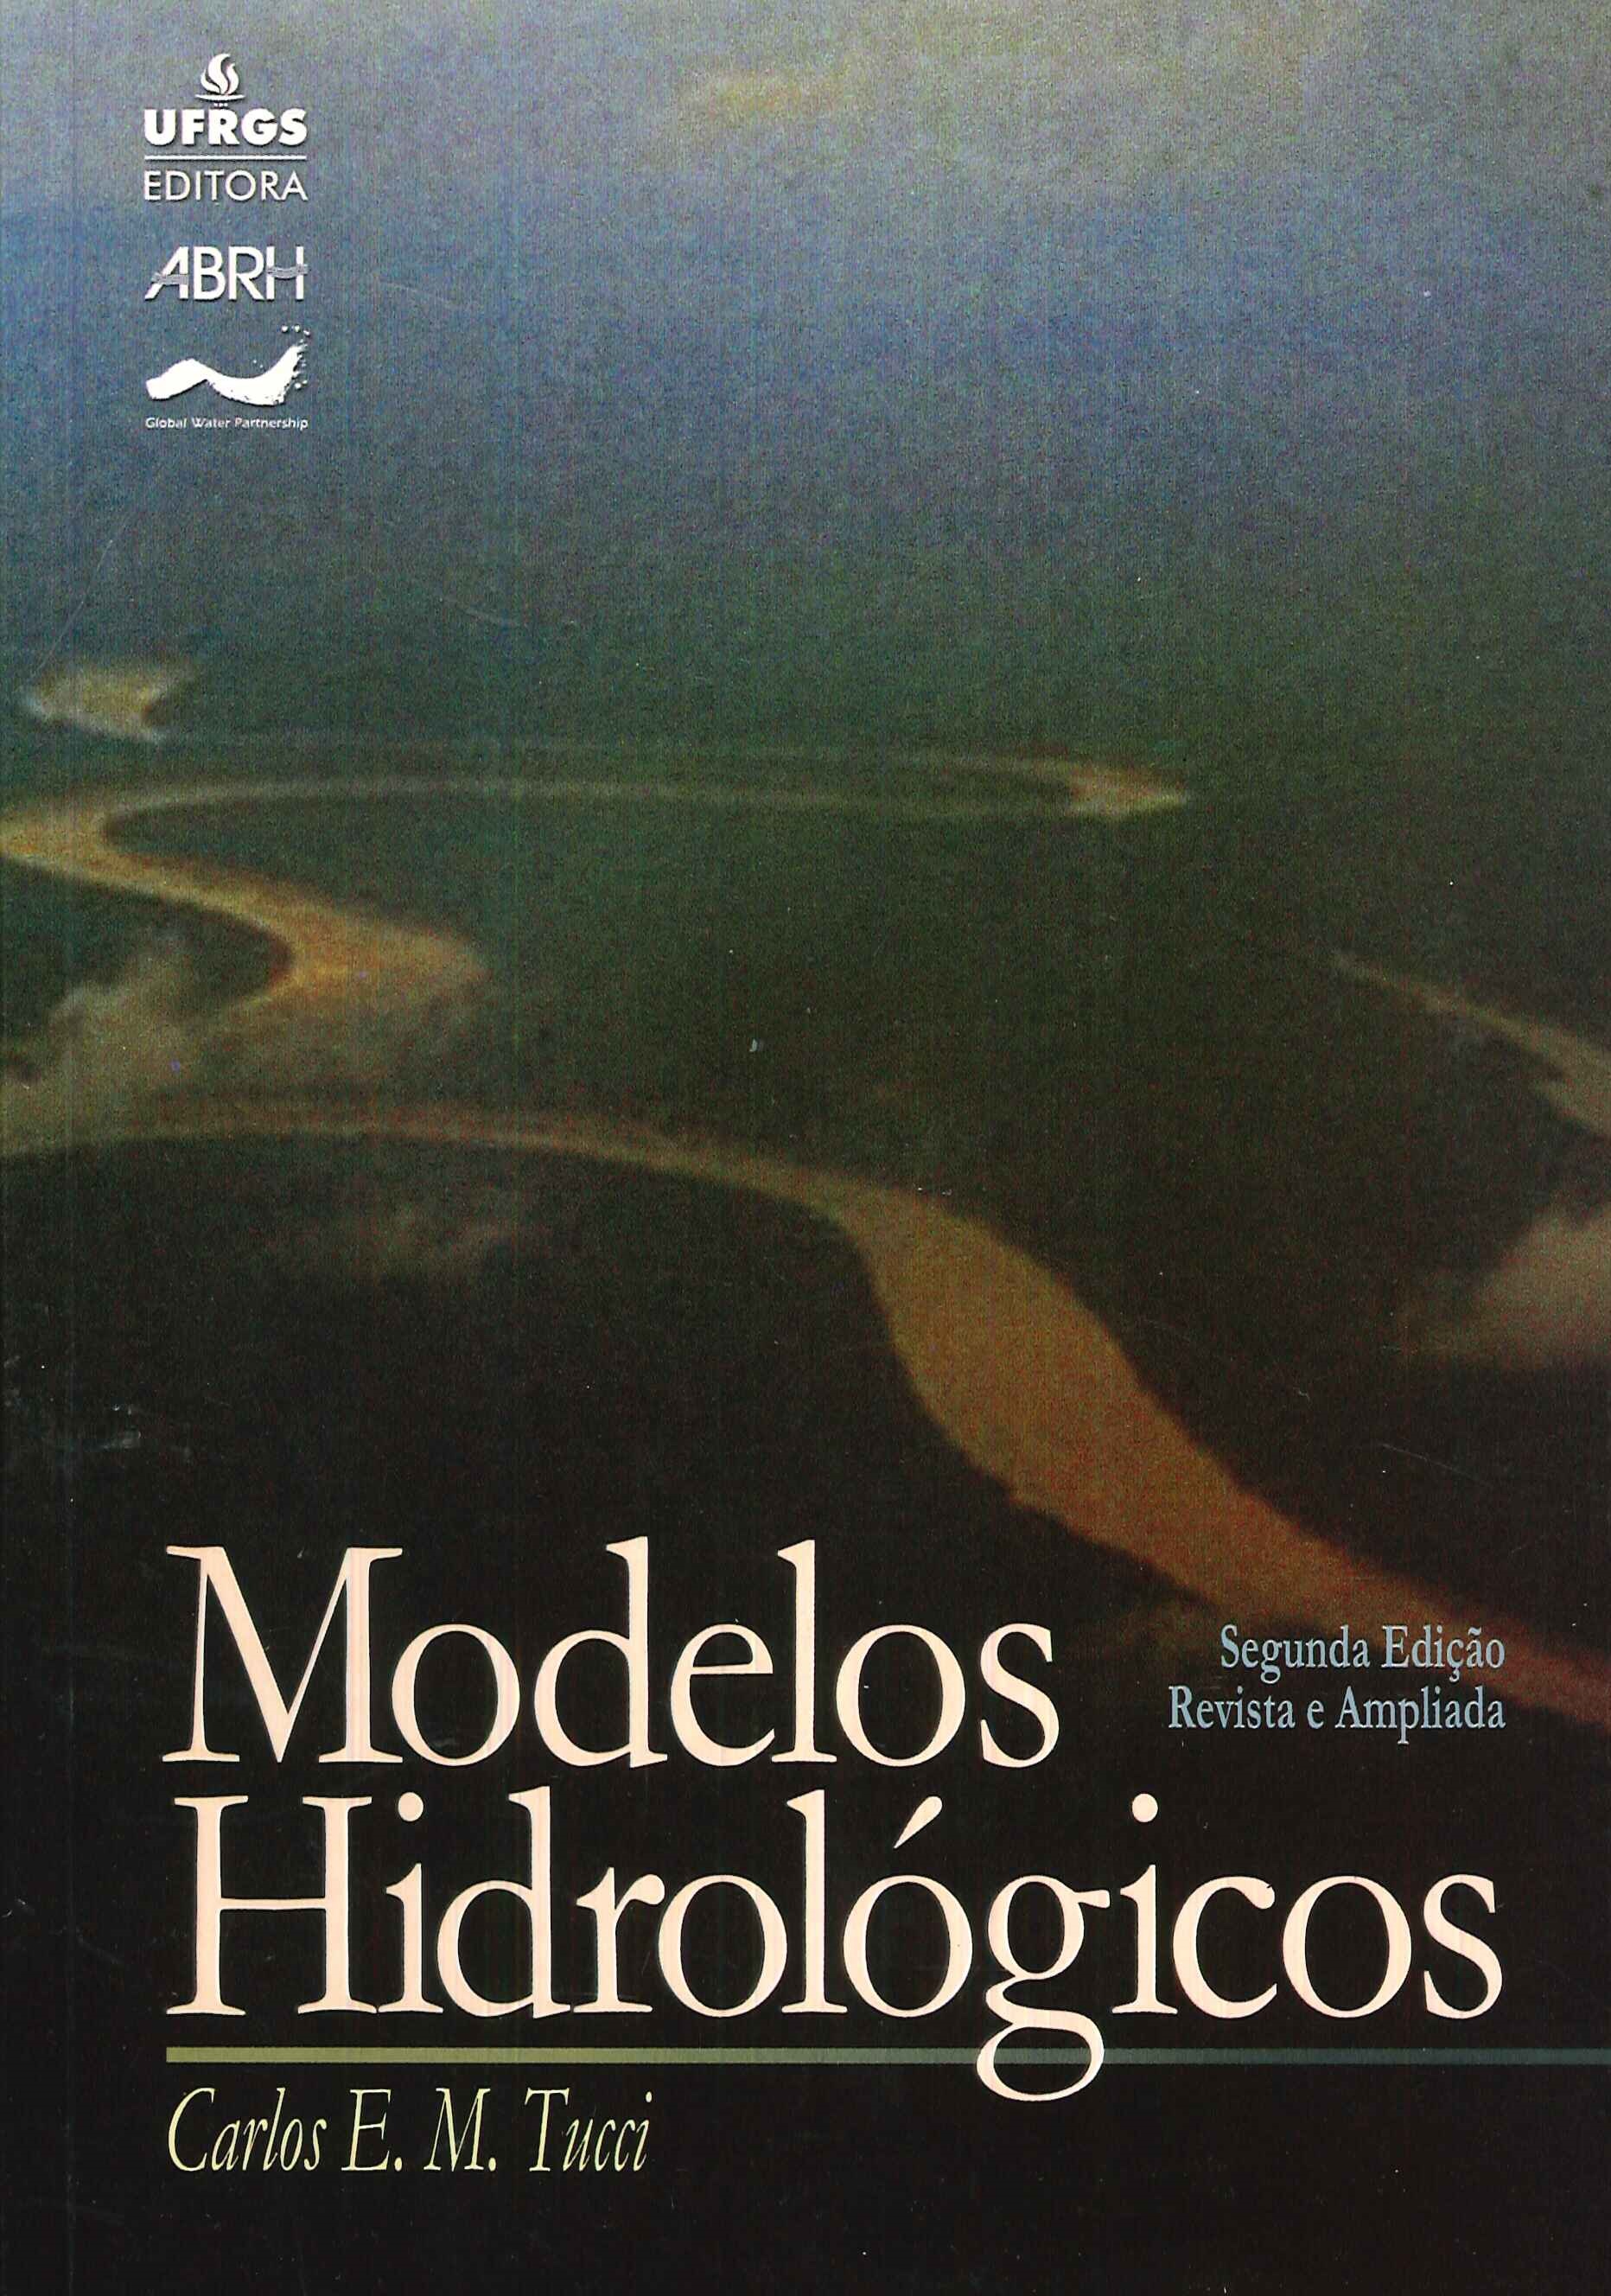 Modelos hidrológicos